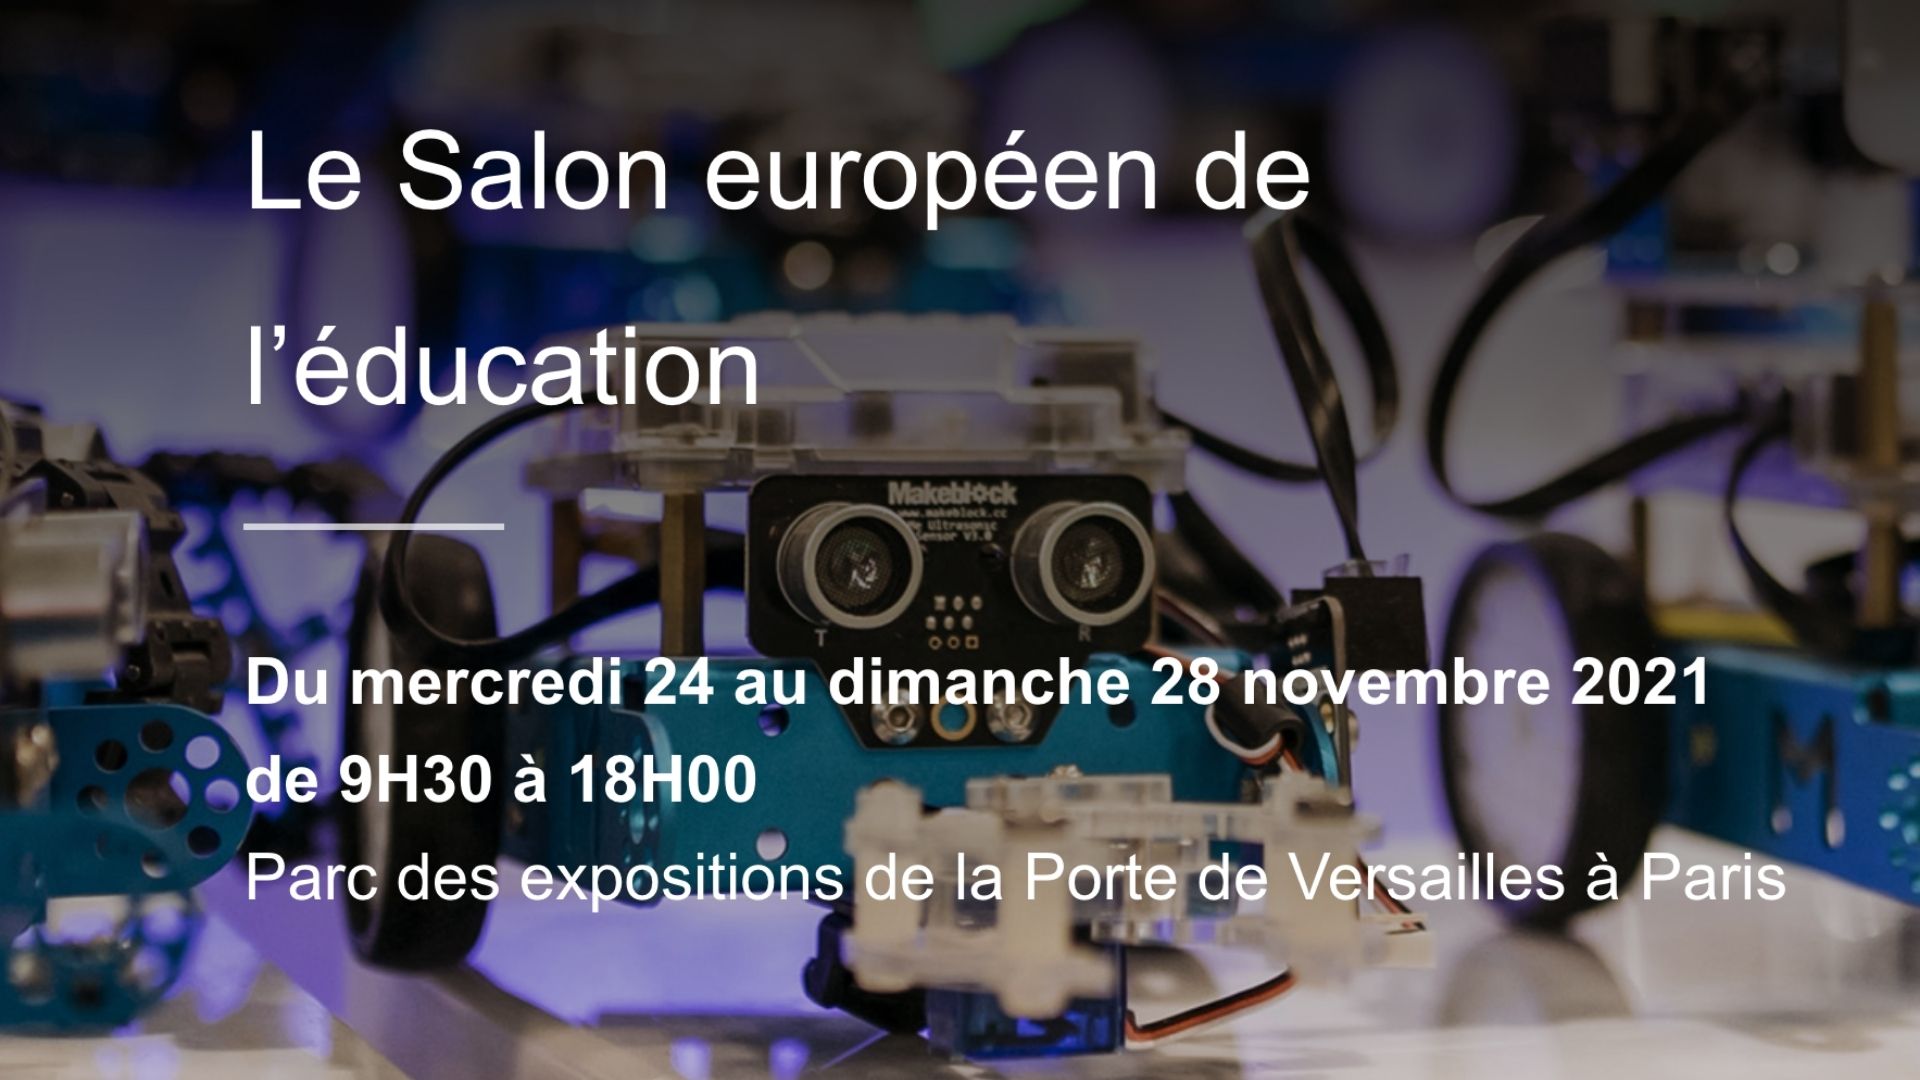 Le Salon Européen de l’éducation 2021